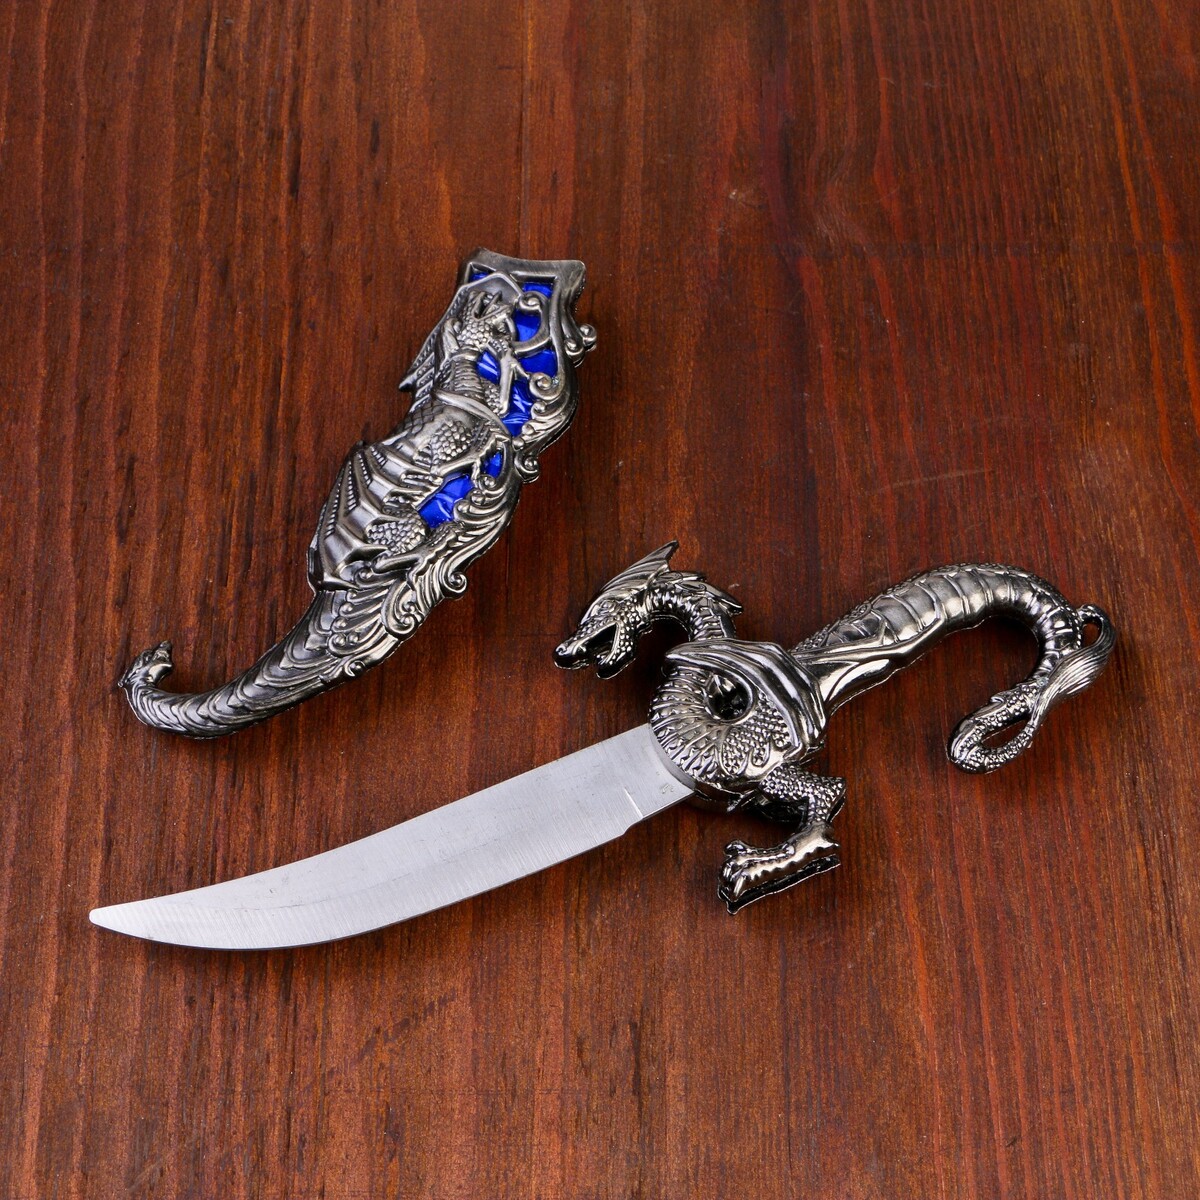 Сувенирный нож, 24,5 см резные ножны, дракон на рукояти девственница дракон депортация